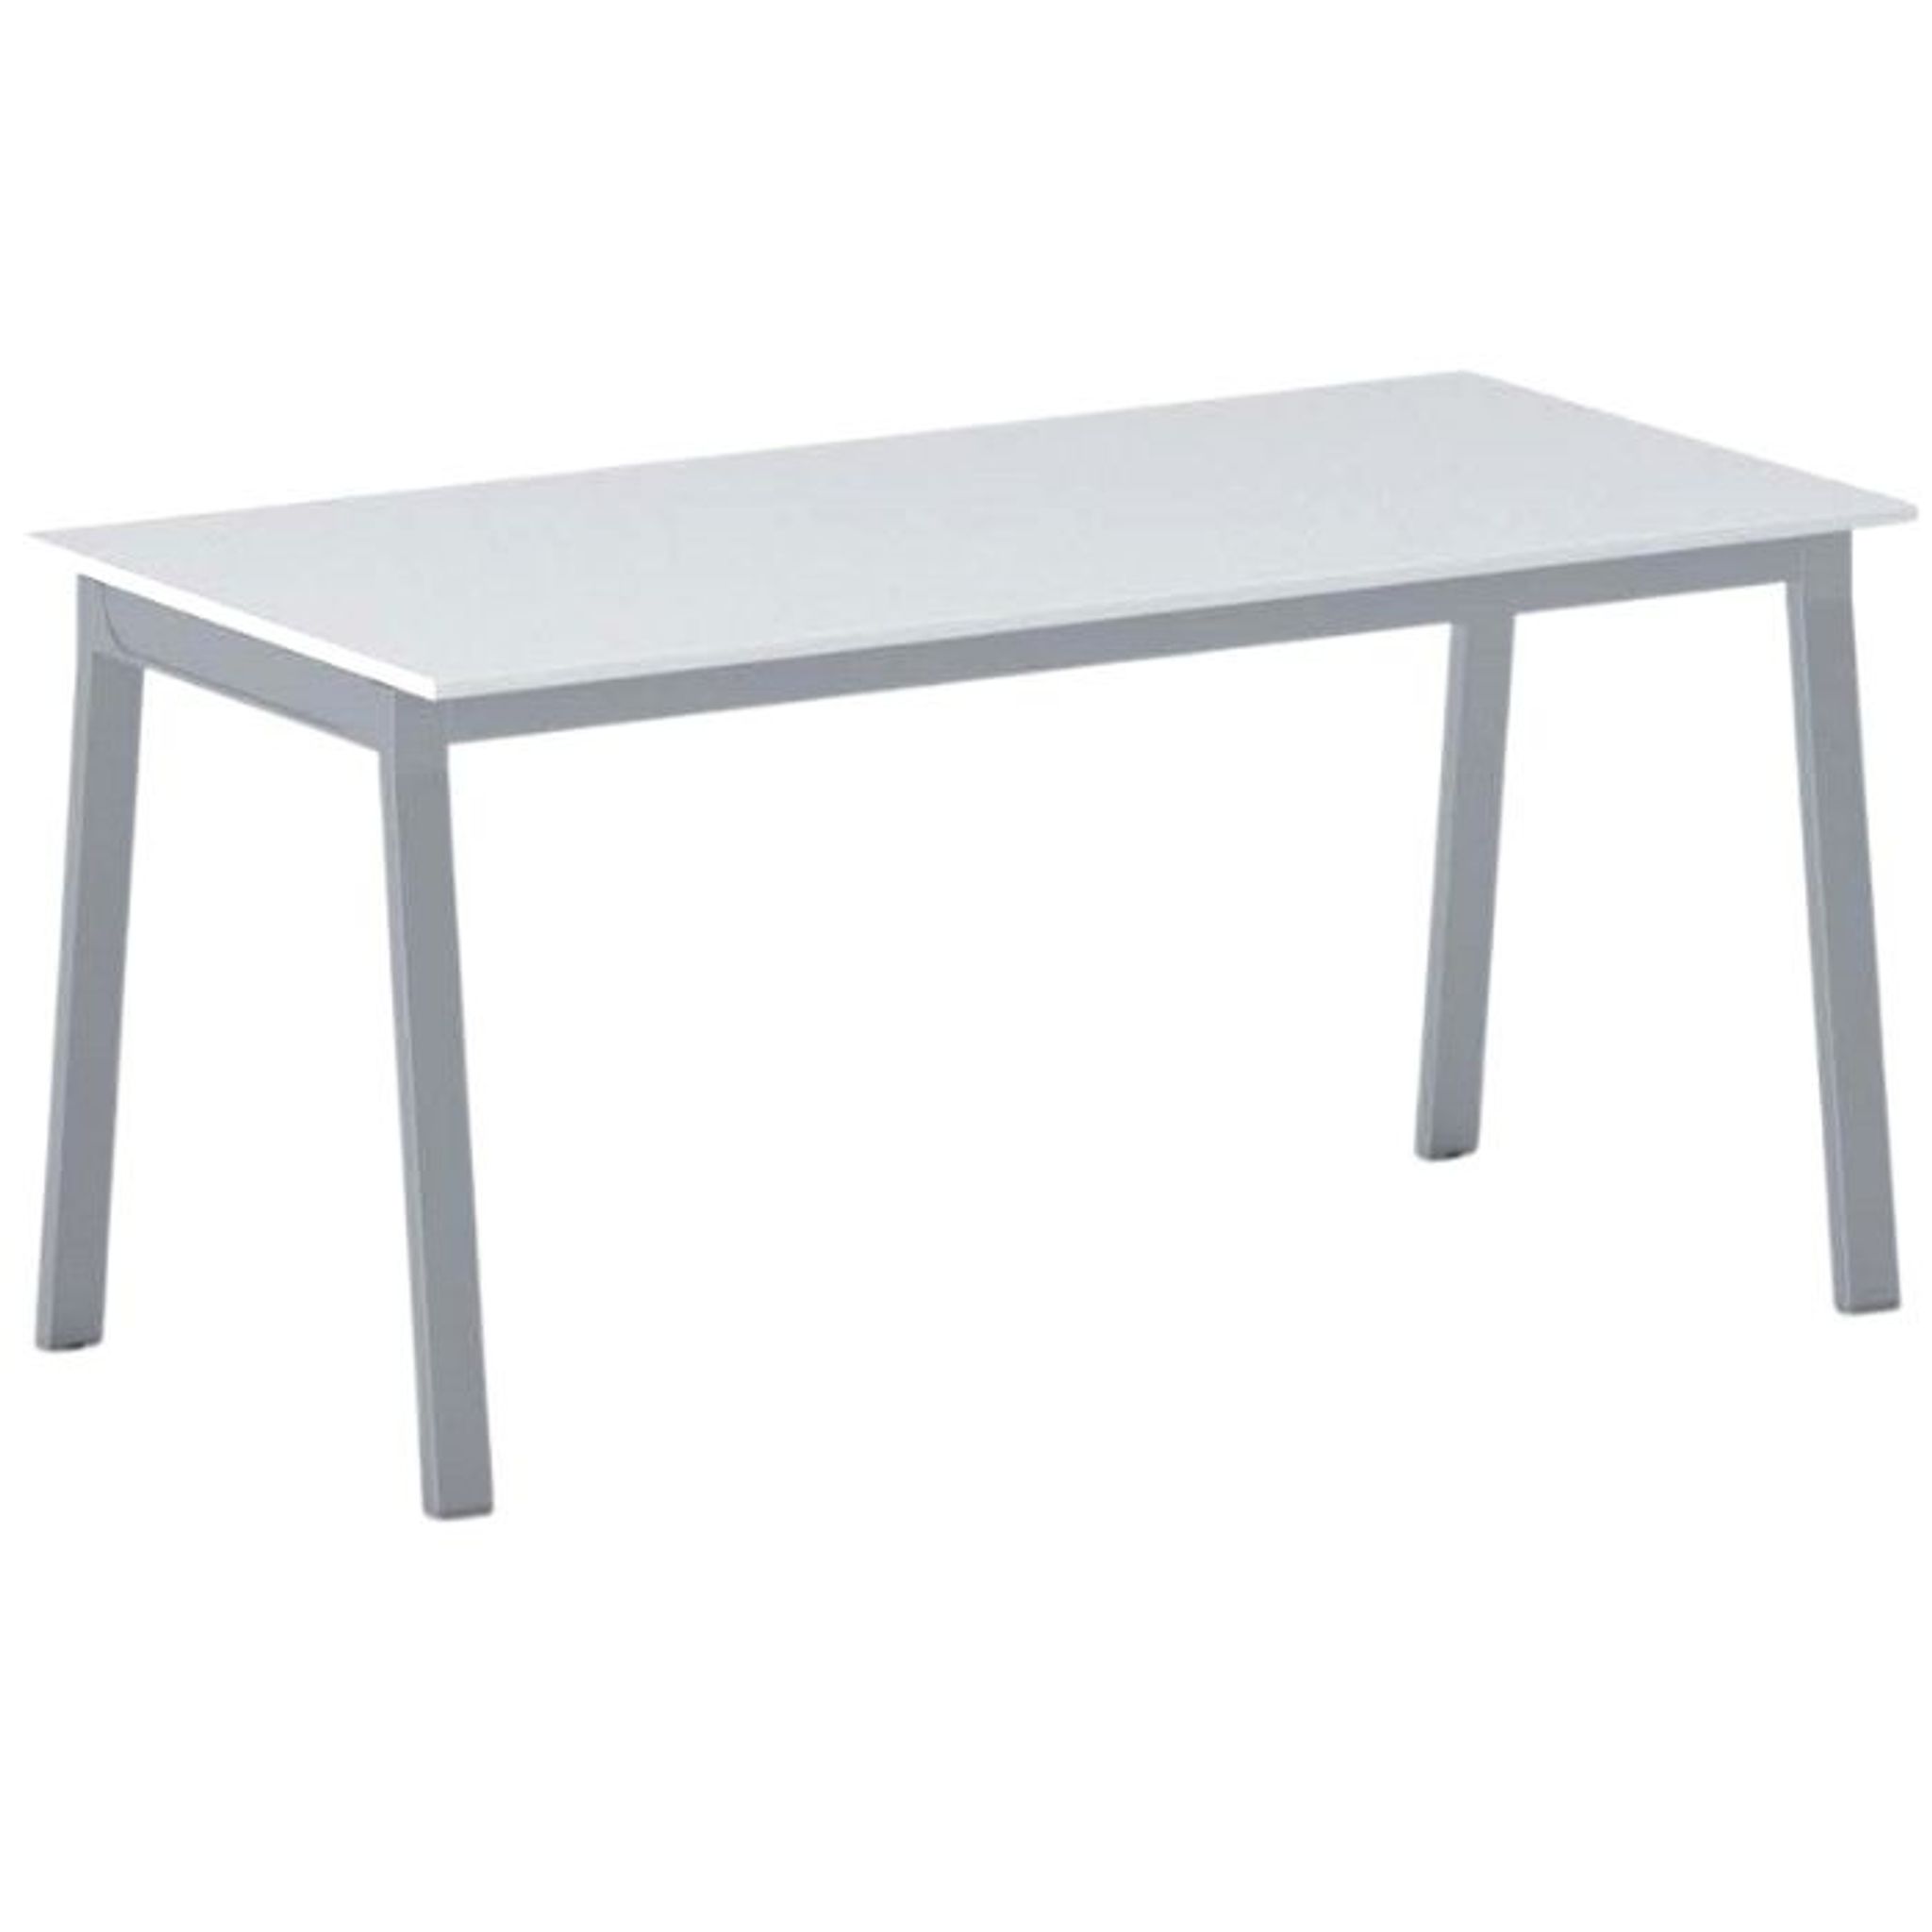 Stół PRIMO BASIC z szarosrebrnym stelażem, 1600 x 800 x 750 mm, biały